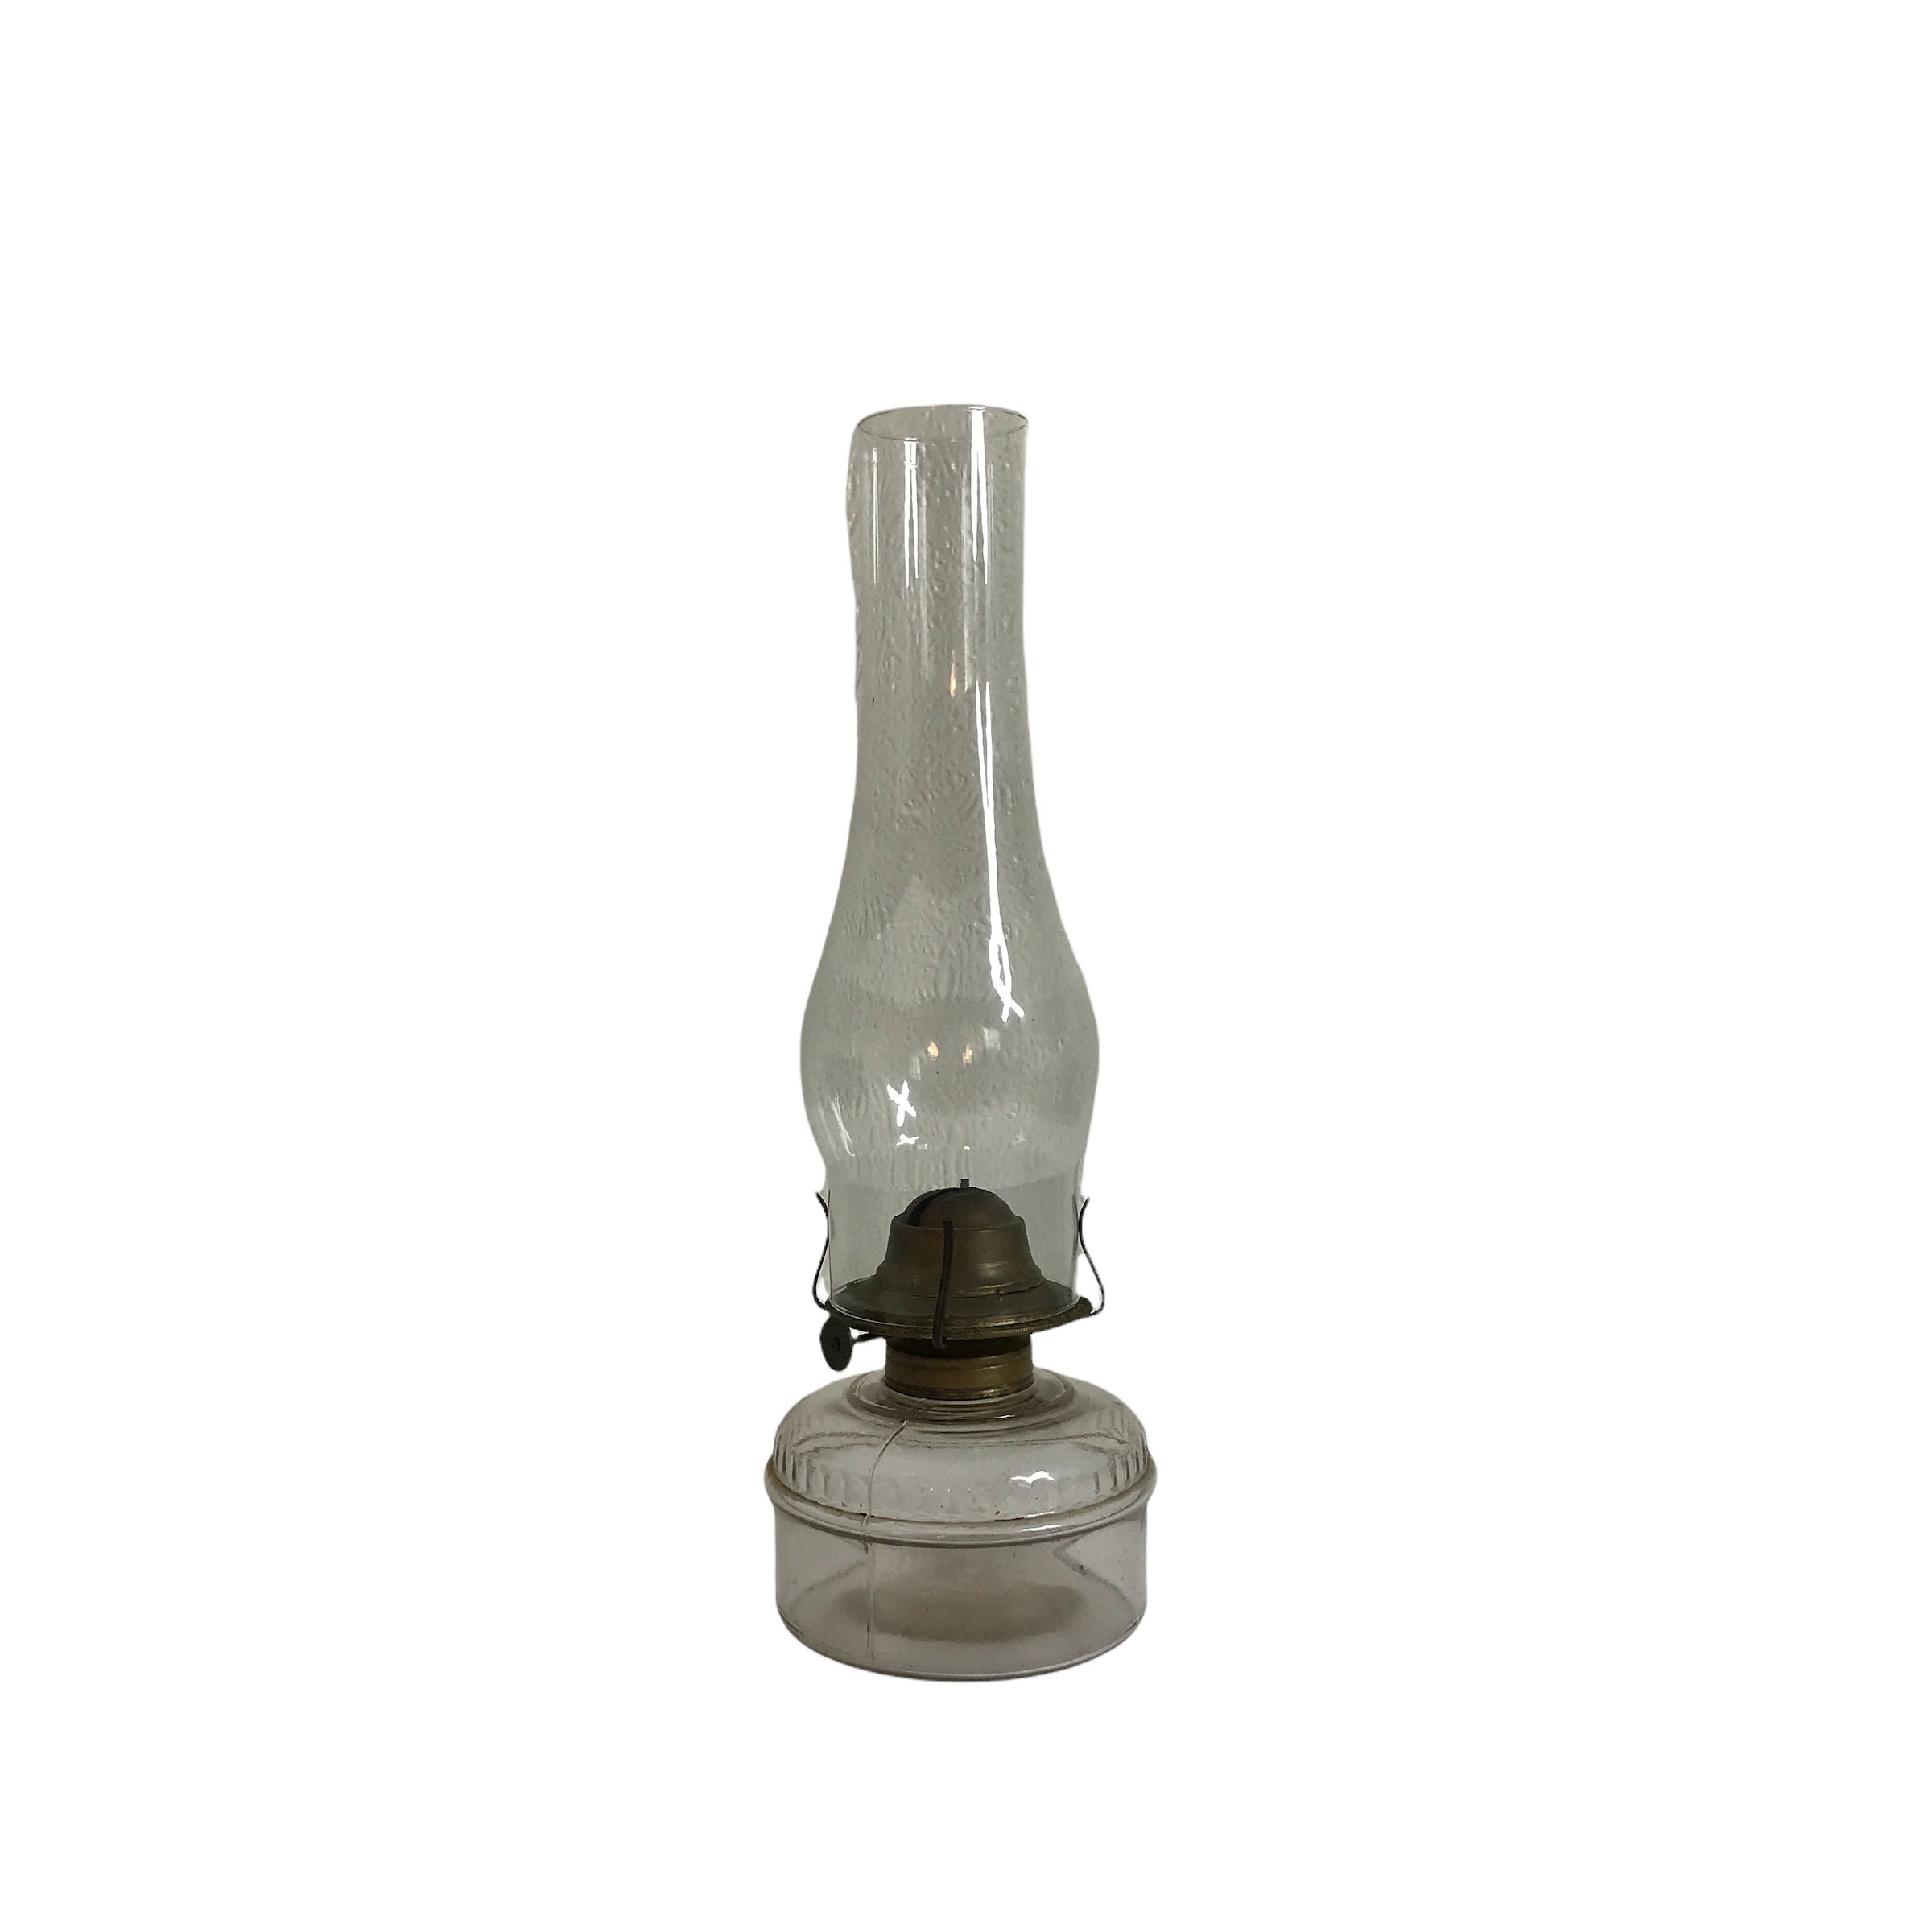 Brass Oil Lamp, Vintage French Kerosene Lantern Restored, Storm